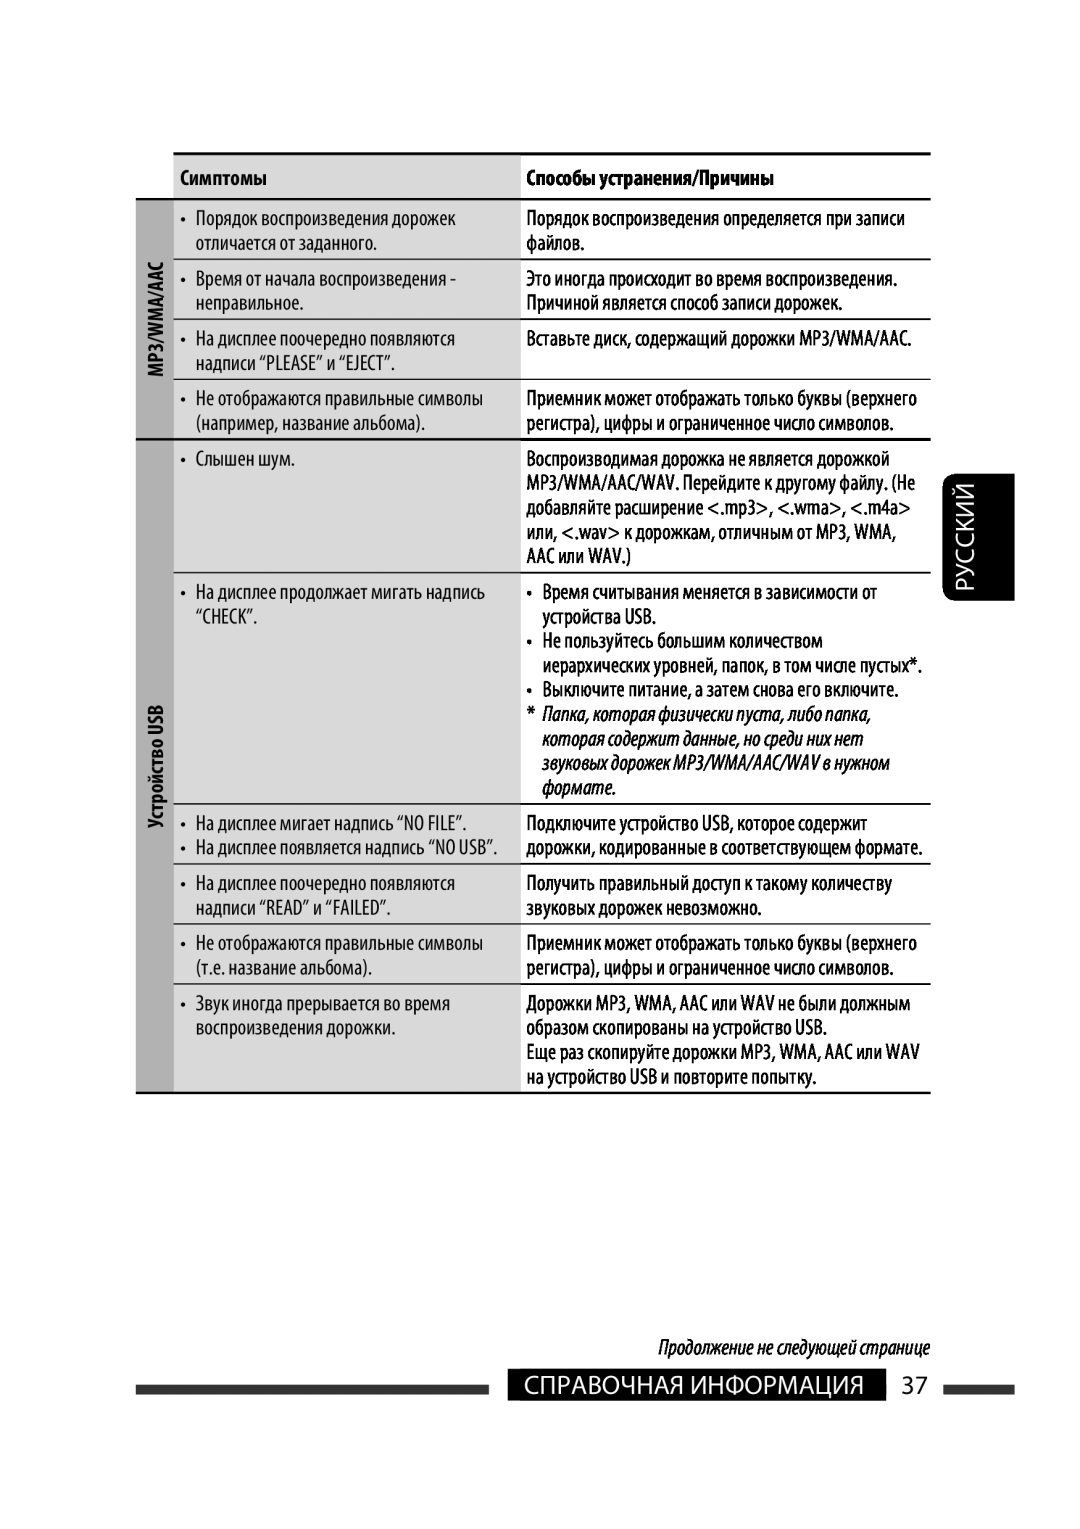 JVC KW-XG701 manual формате, Руcckий, Справочная Информация, Симптомы, Способы устранения/Причины 